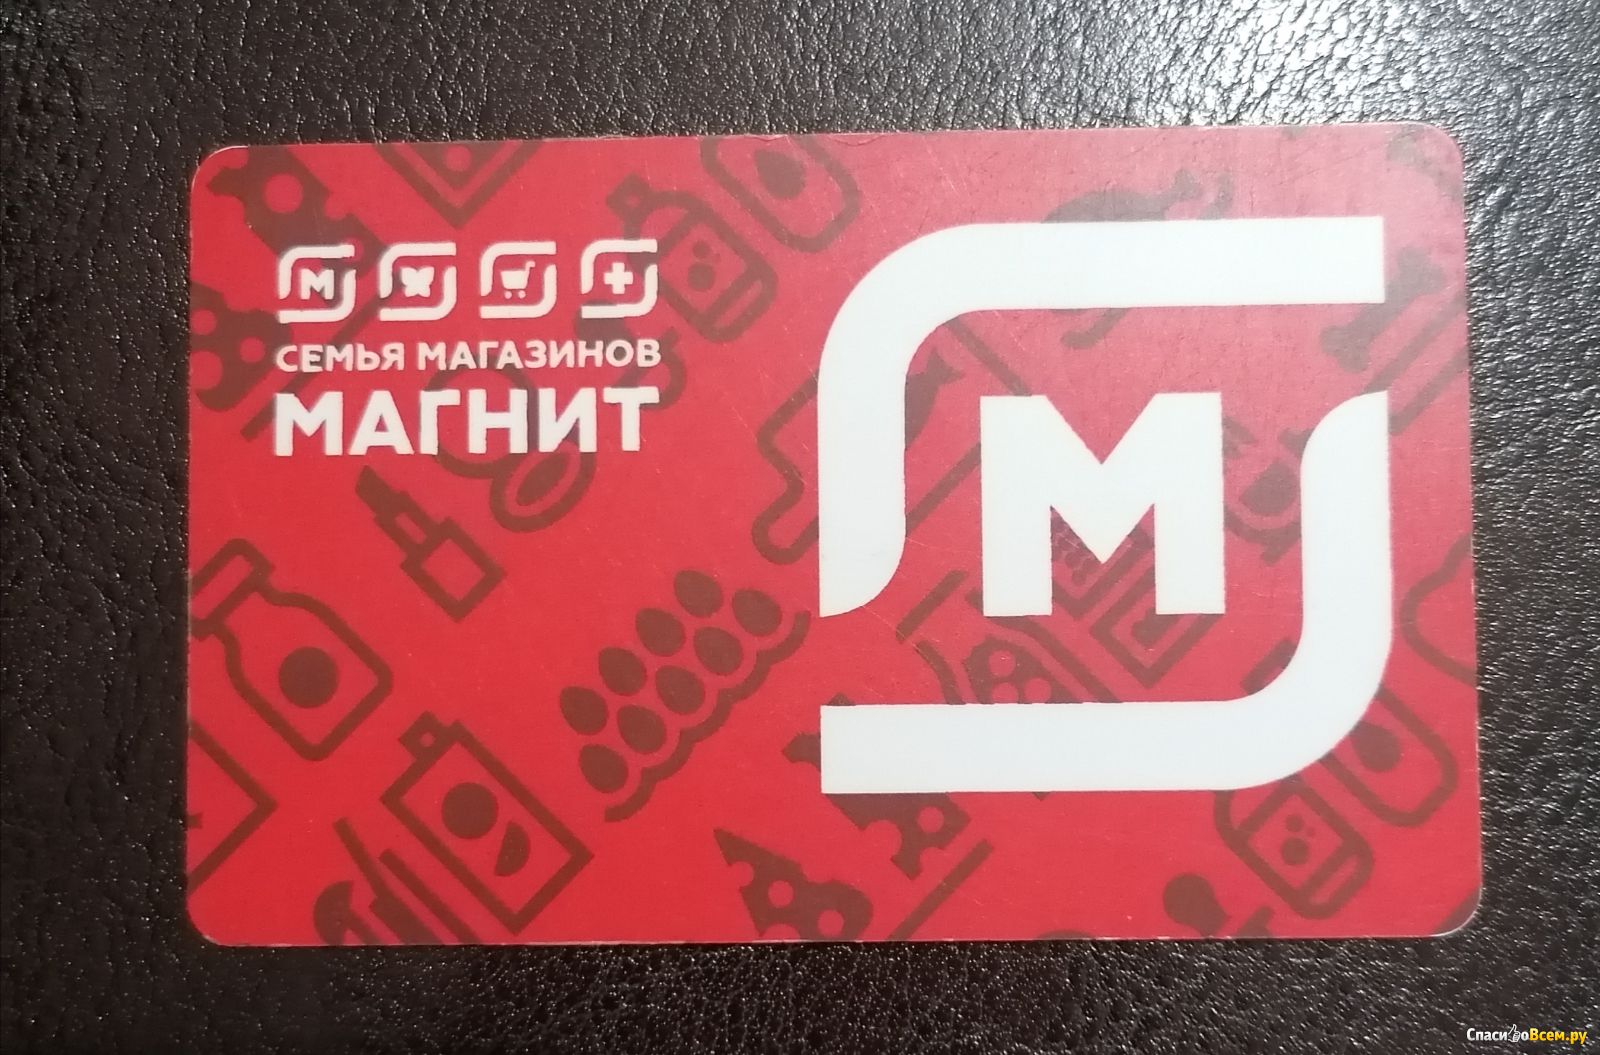 Магазин магнит на карте москвы. Карта лояльности магнит. Loyalty Card Magnit. Подарочная карта магнит.